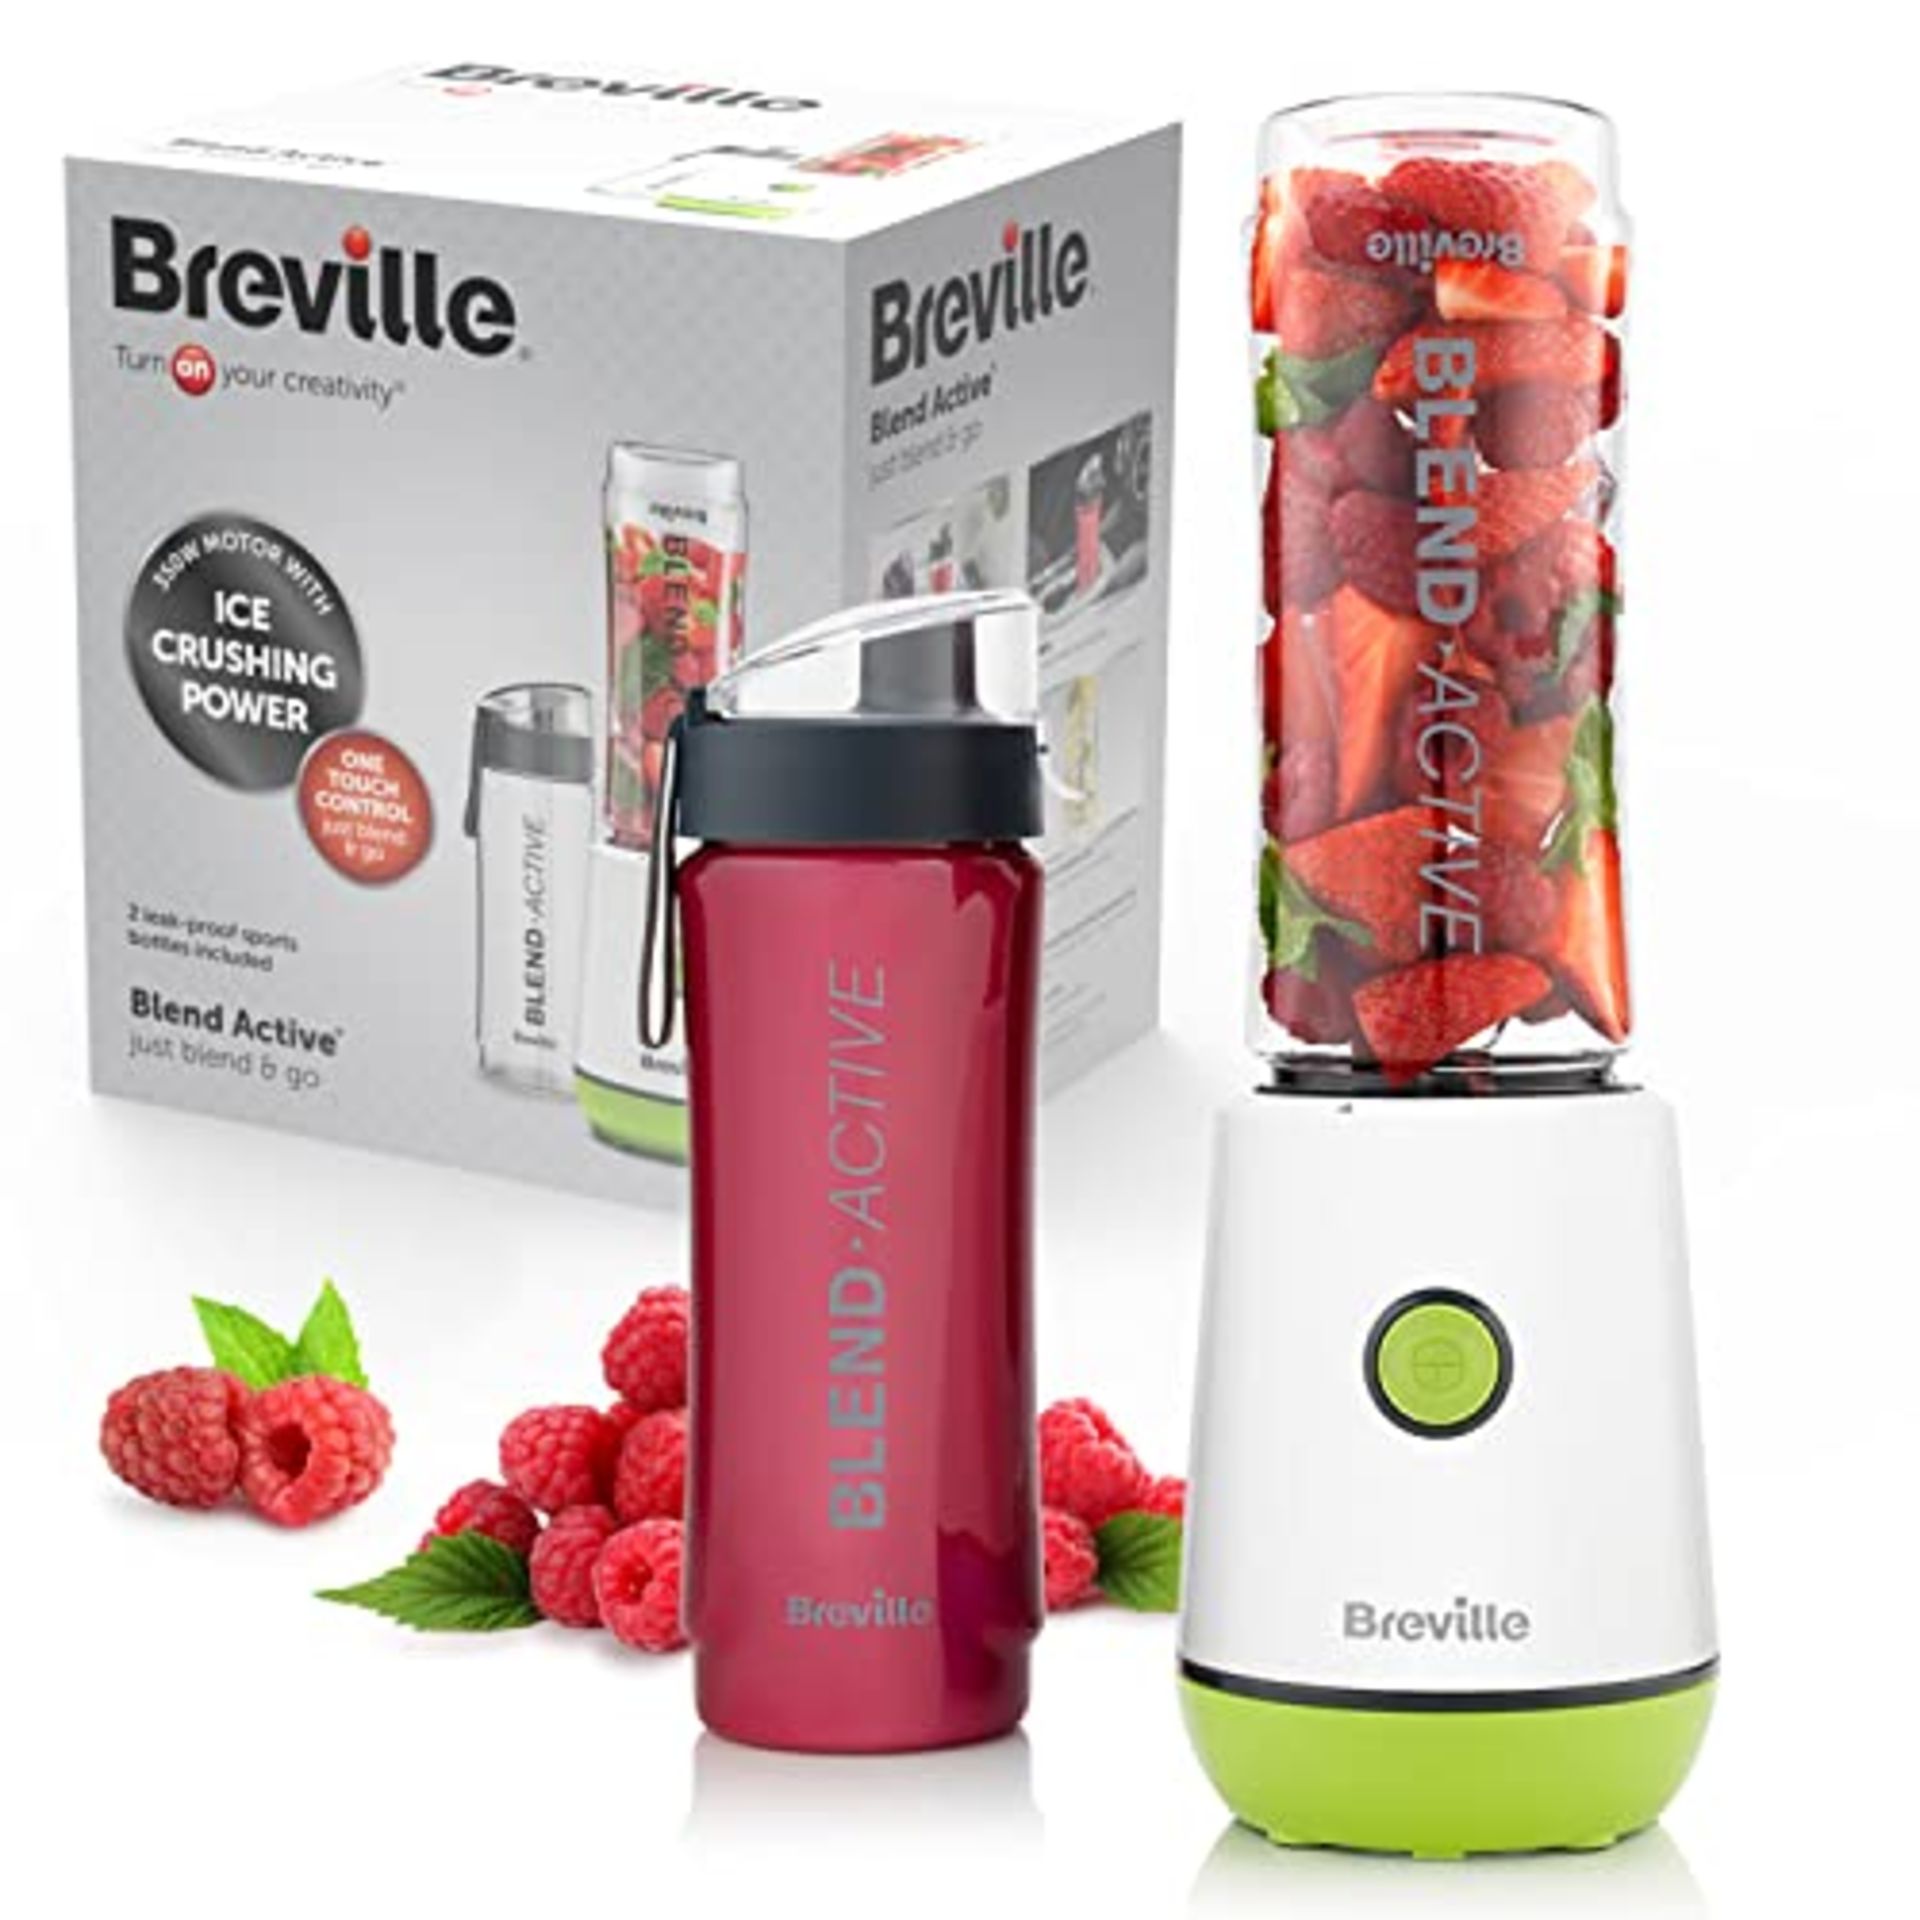 Breville Blend Active Personal Blender & Smoothie Maker | 350W | 2 Portable Blend Acti